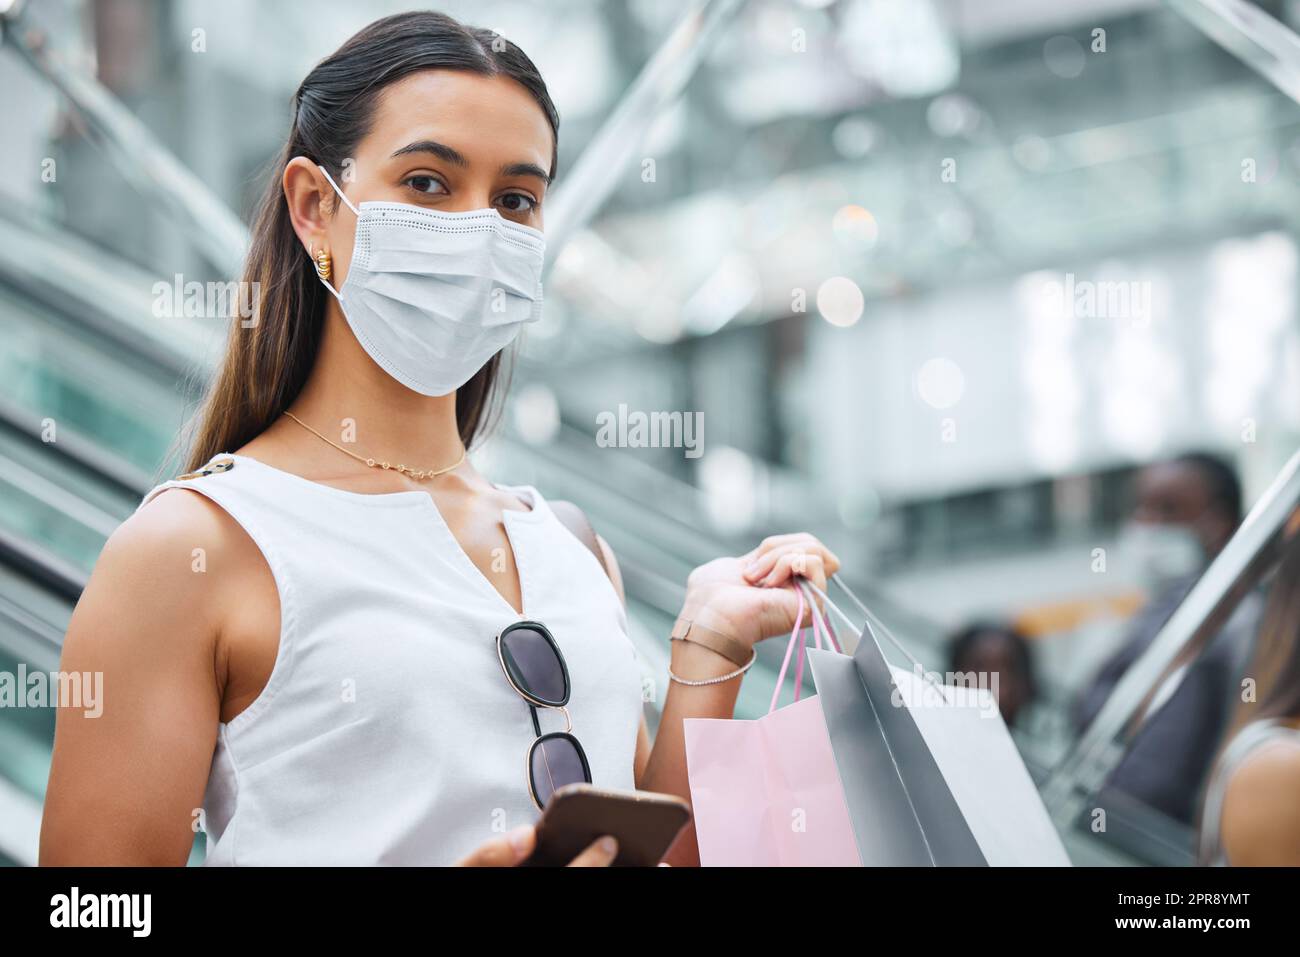 Ritratto di una giovane donna di razza mista che indossa una maschera medica per la prevenzione contro il coronavirus mentre tiene un cellulare e borse della spesa. Alla moda ispanica che trasporta borse al dettaglio dopo l'acquisto in un centro commerciale durante la pandemia di Covid-19 Foto Stock